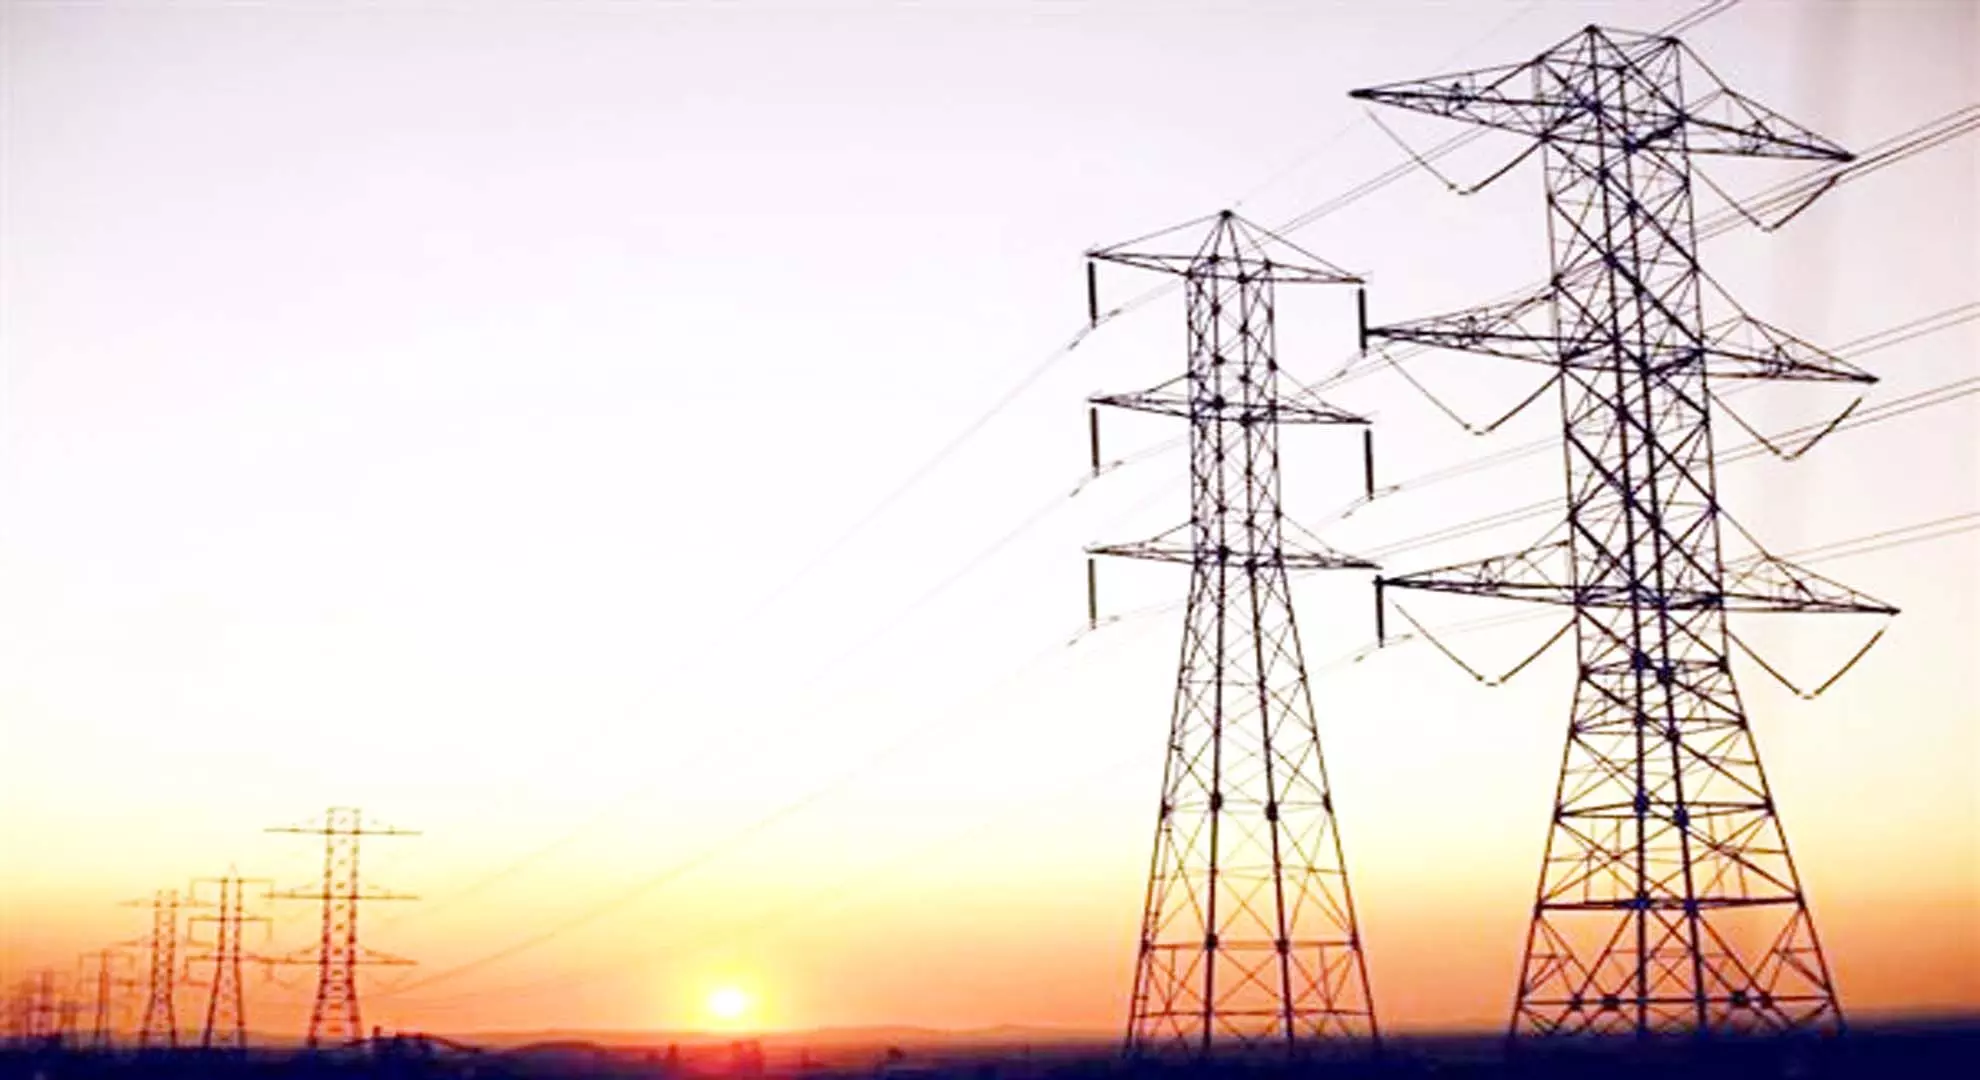 मांग बढ़ने के साथ, पंजाब के उपभोक्ताओं को जून से अधिक बिजली कटौती का सामना करना पड़ सकता है